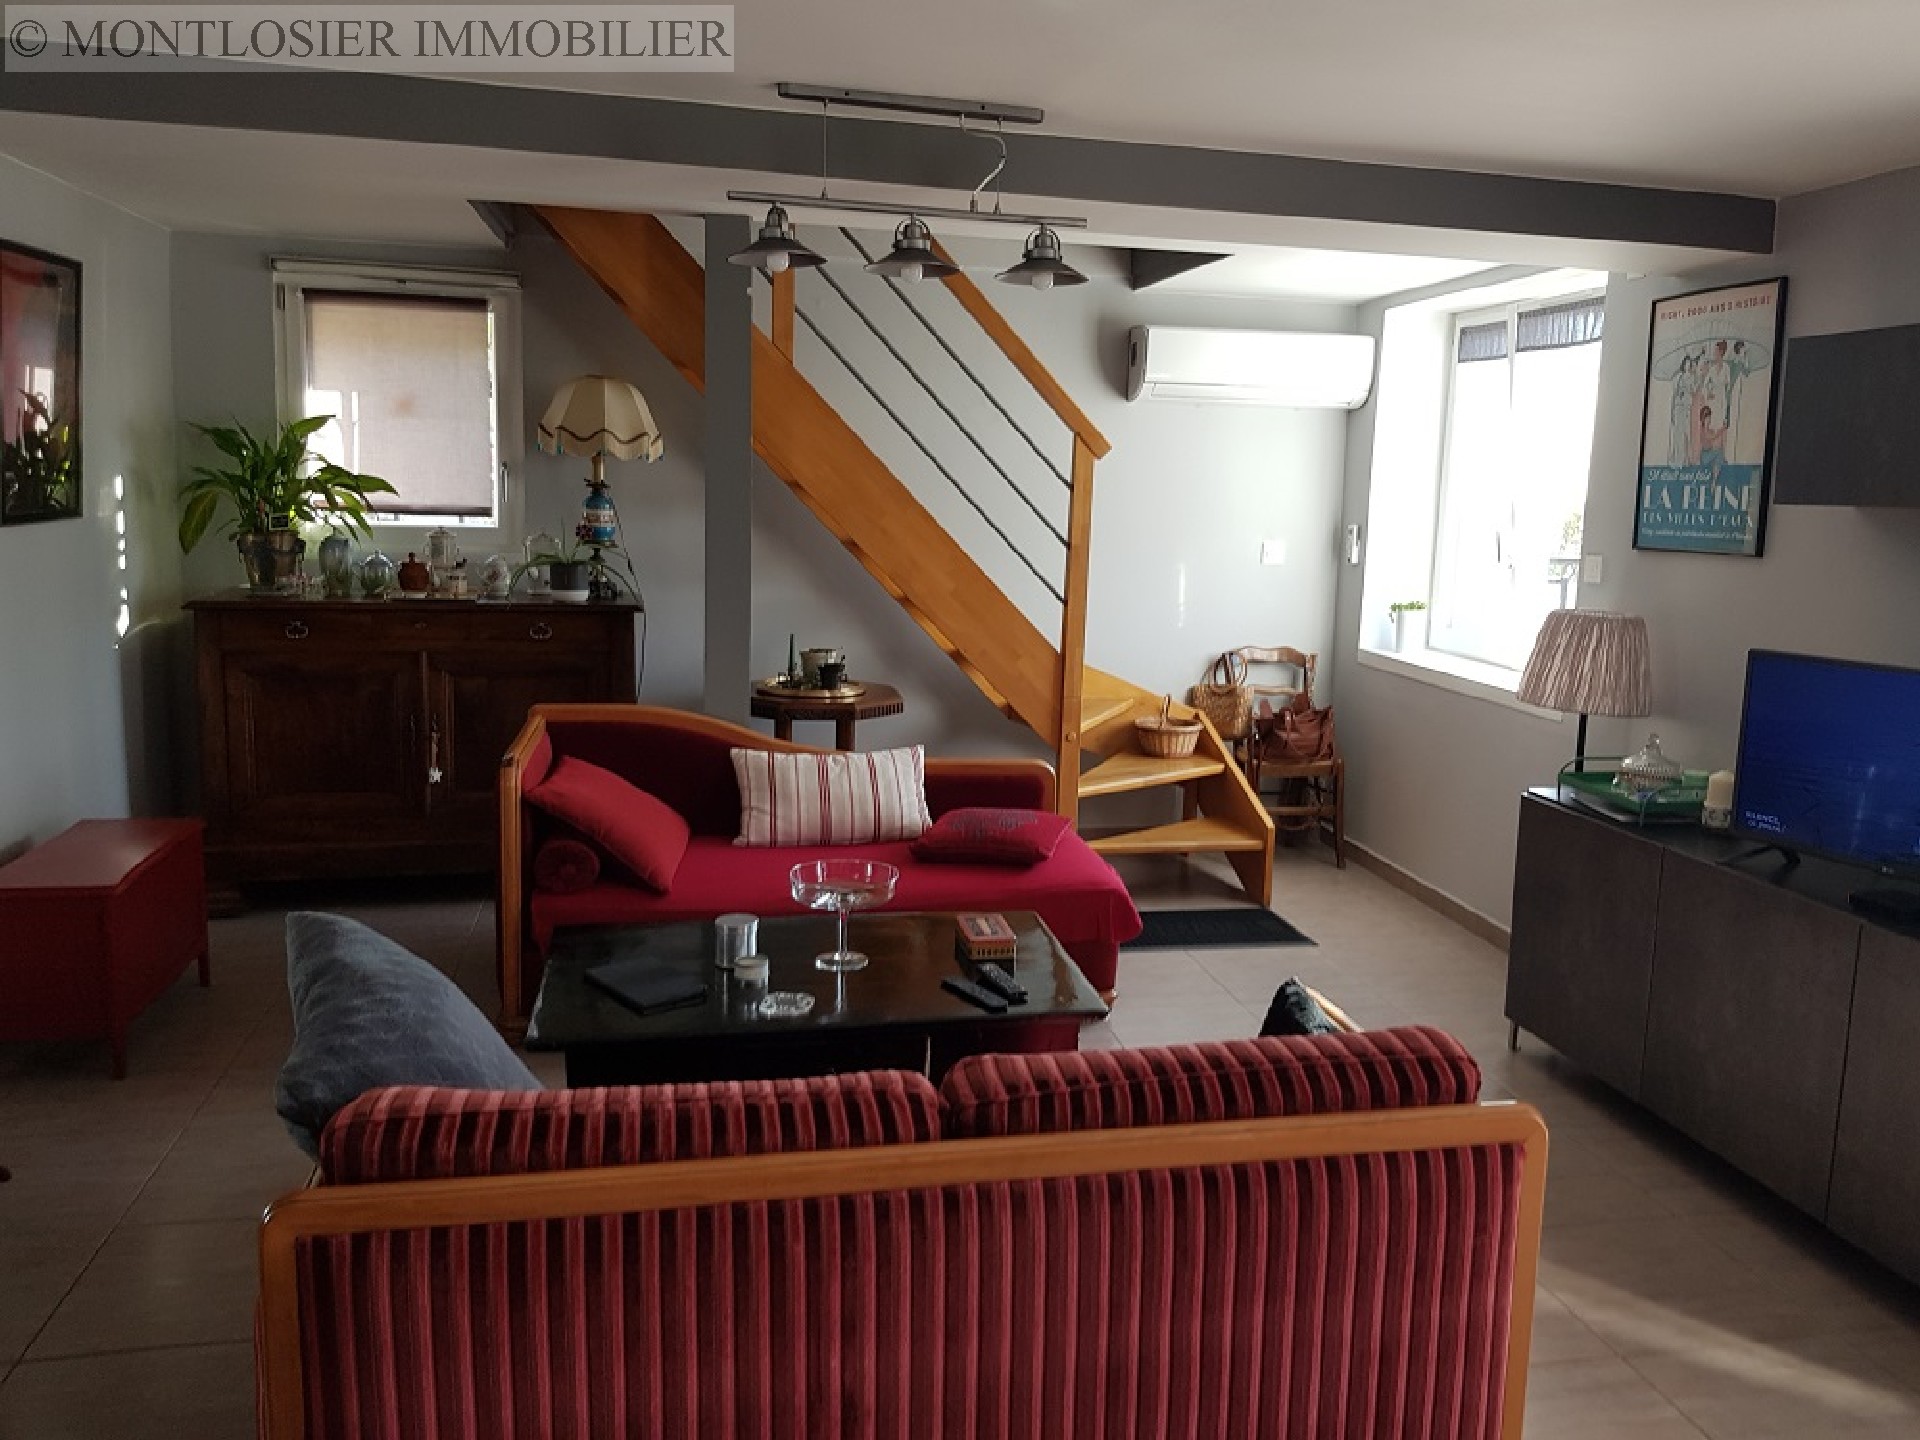 Maison à vendre, LE MAYET D ECOLE, 210 m², 8 pièces